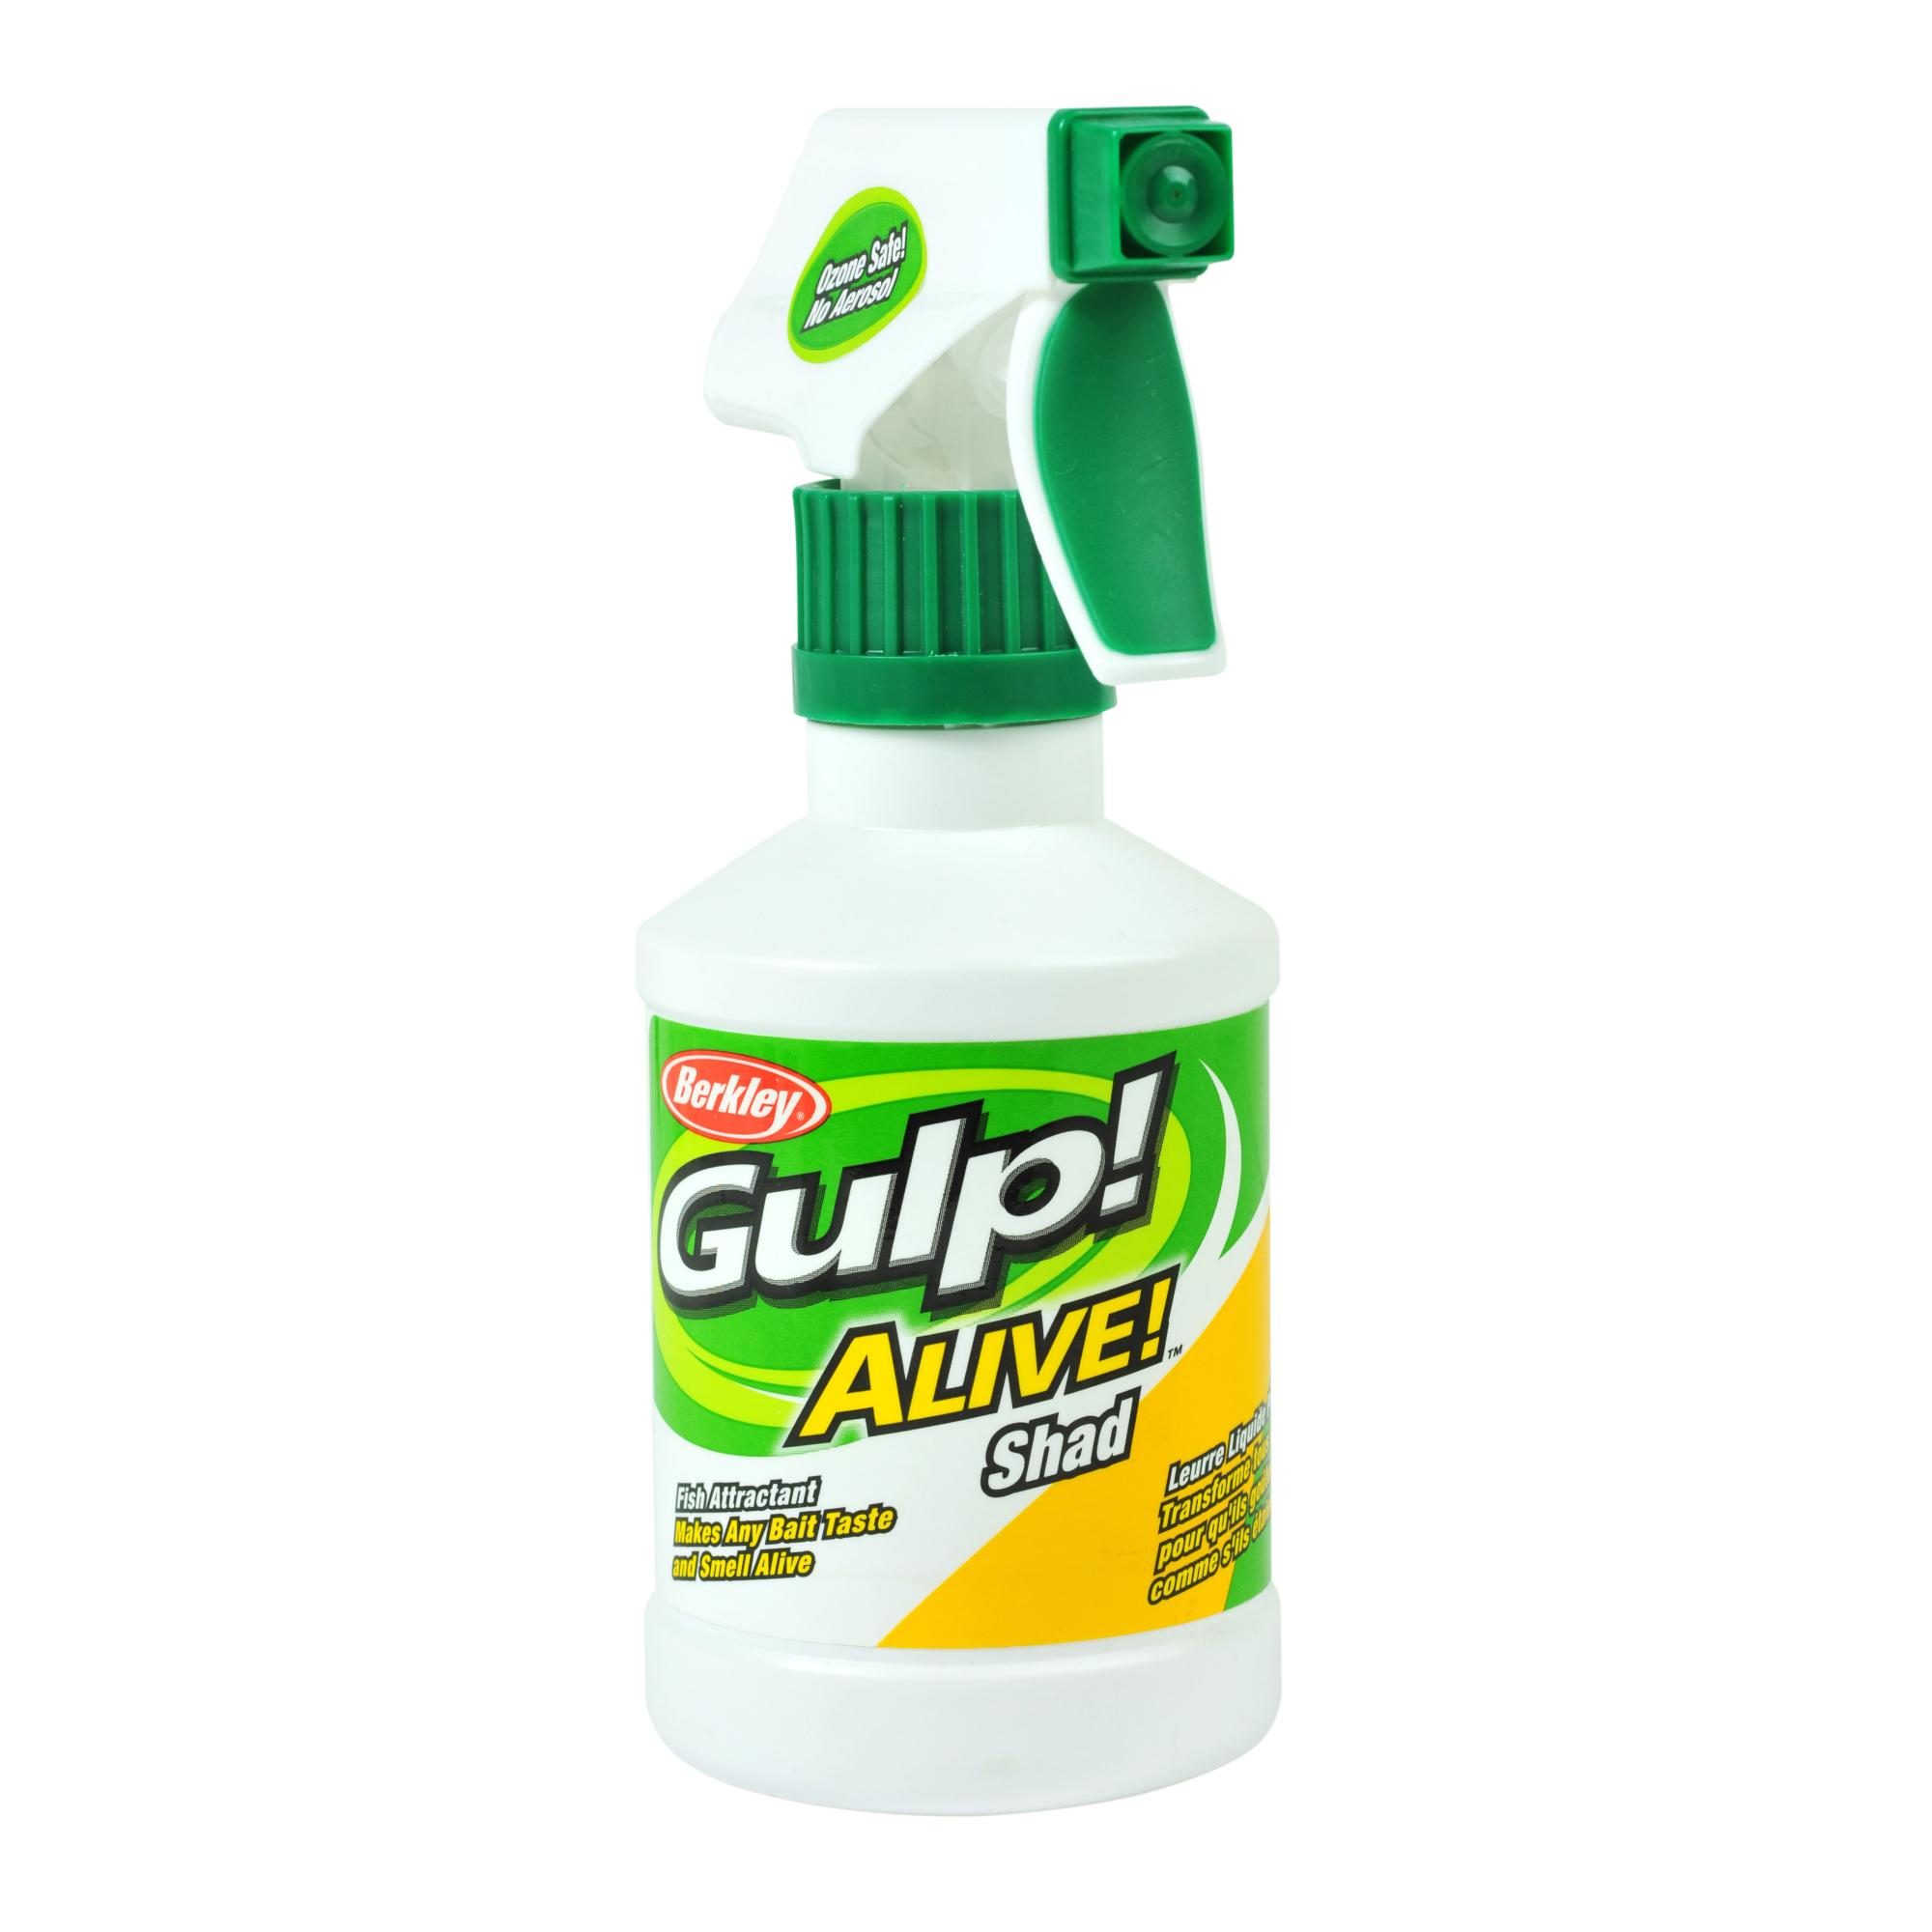 Gulp! Alive! Spray Attractant ShadShiner, 8 oz Spray Bottle